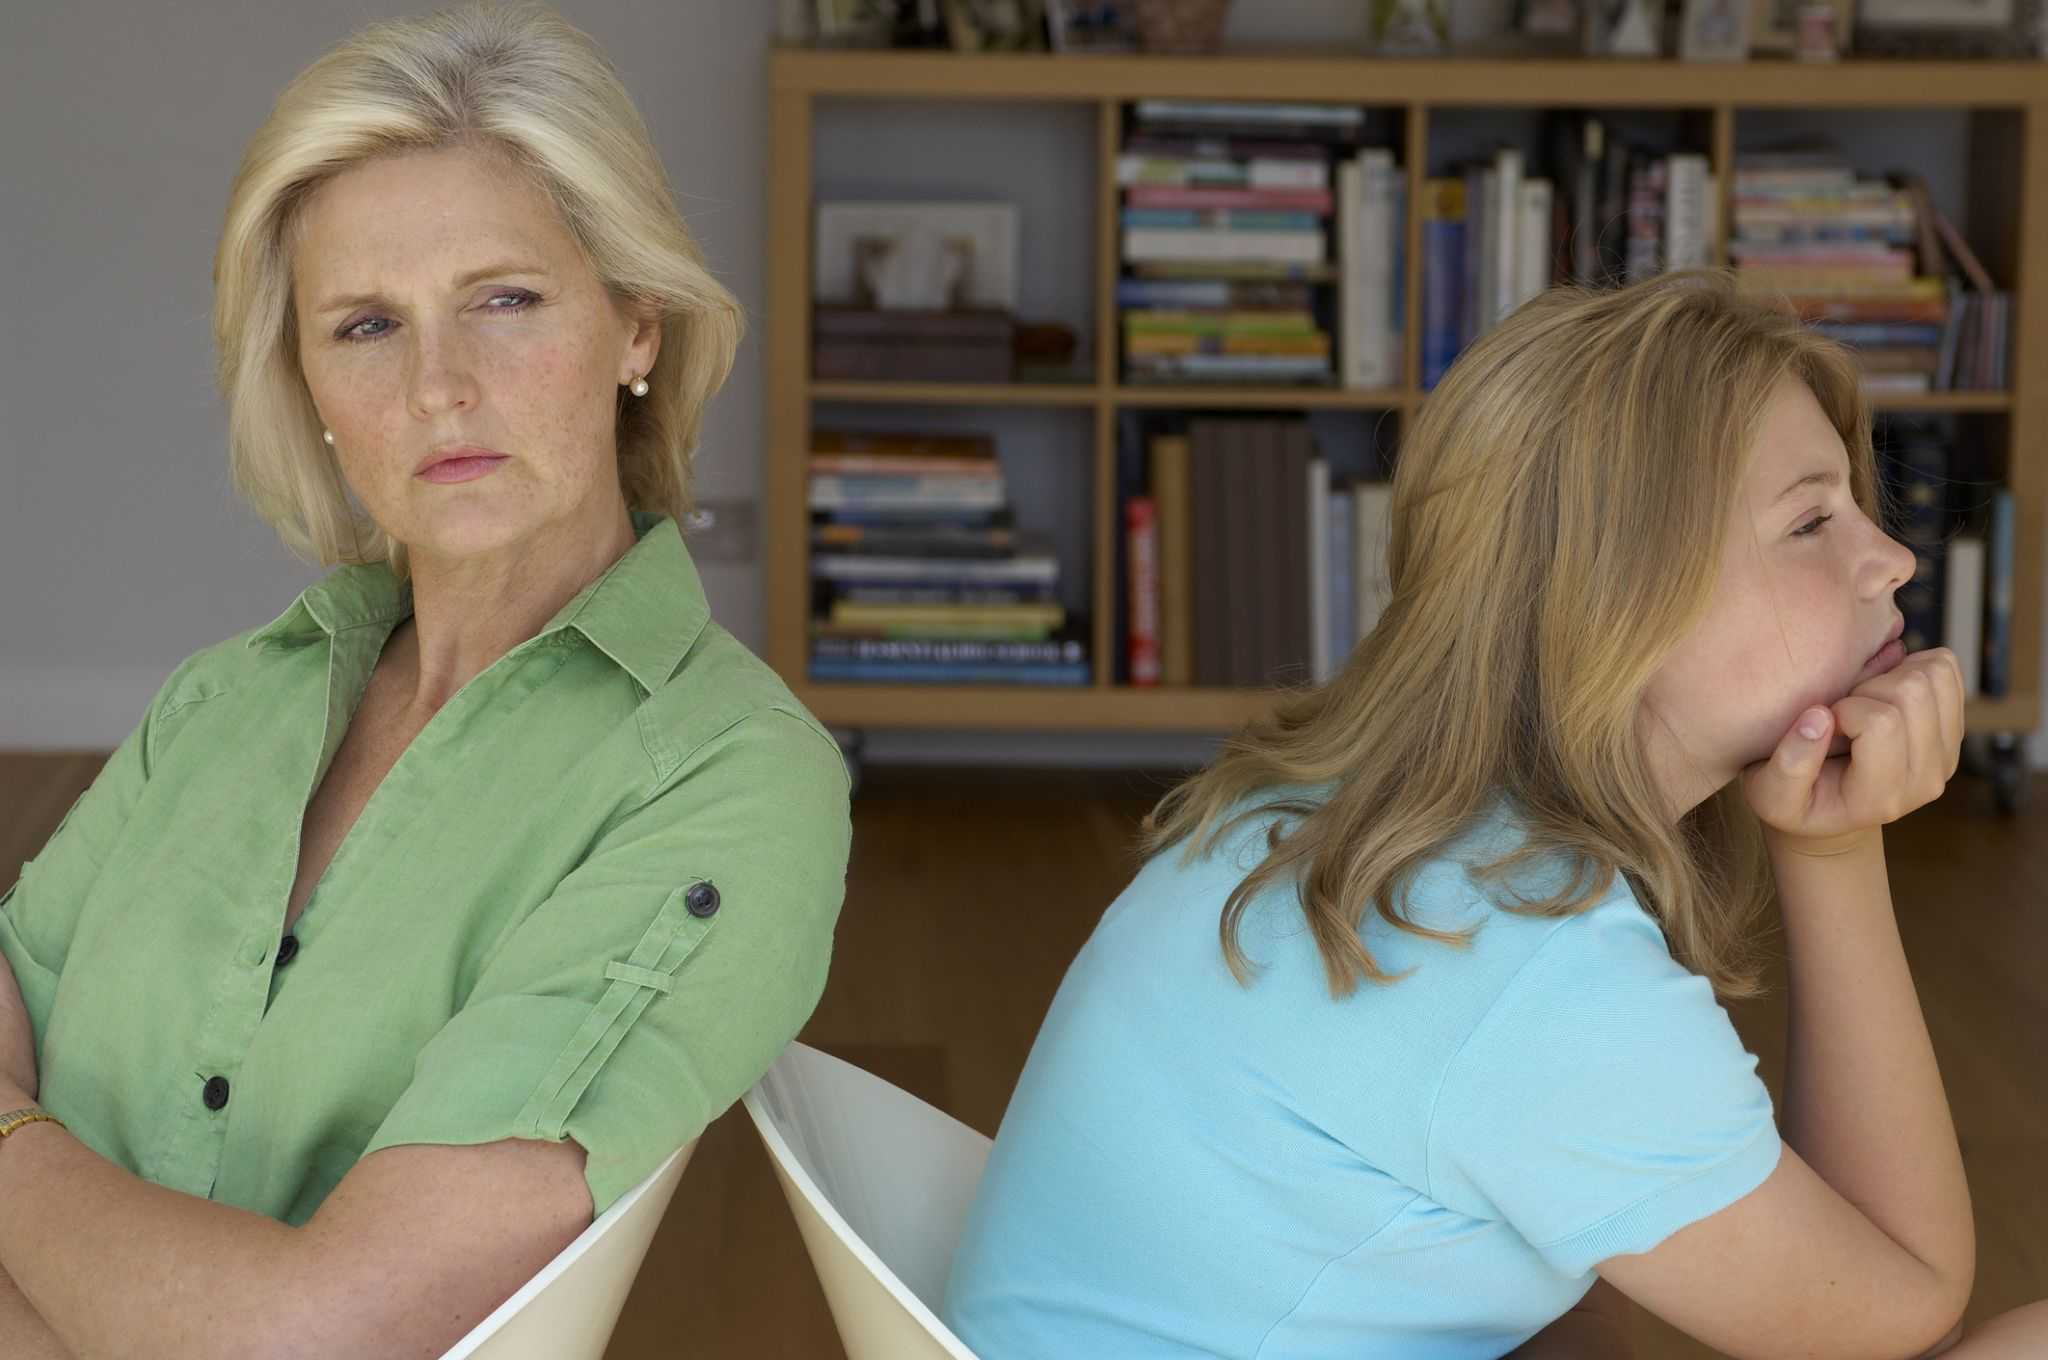 Как исправить отношения матери и дочери с точки зрения психологии?